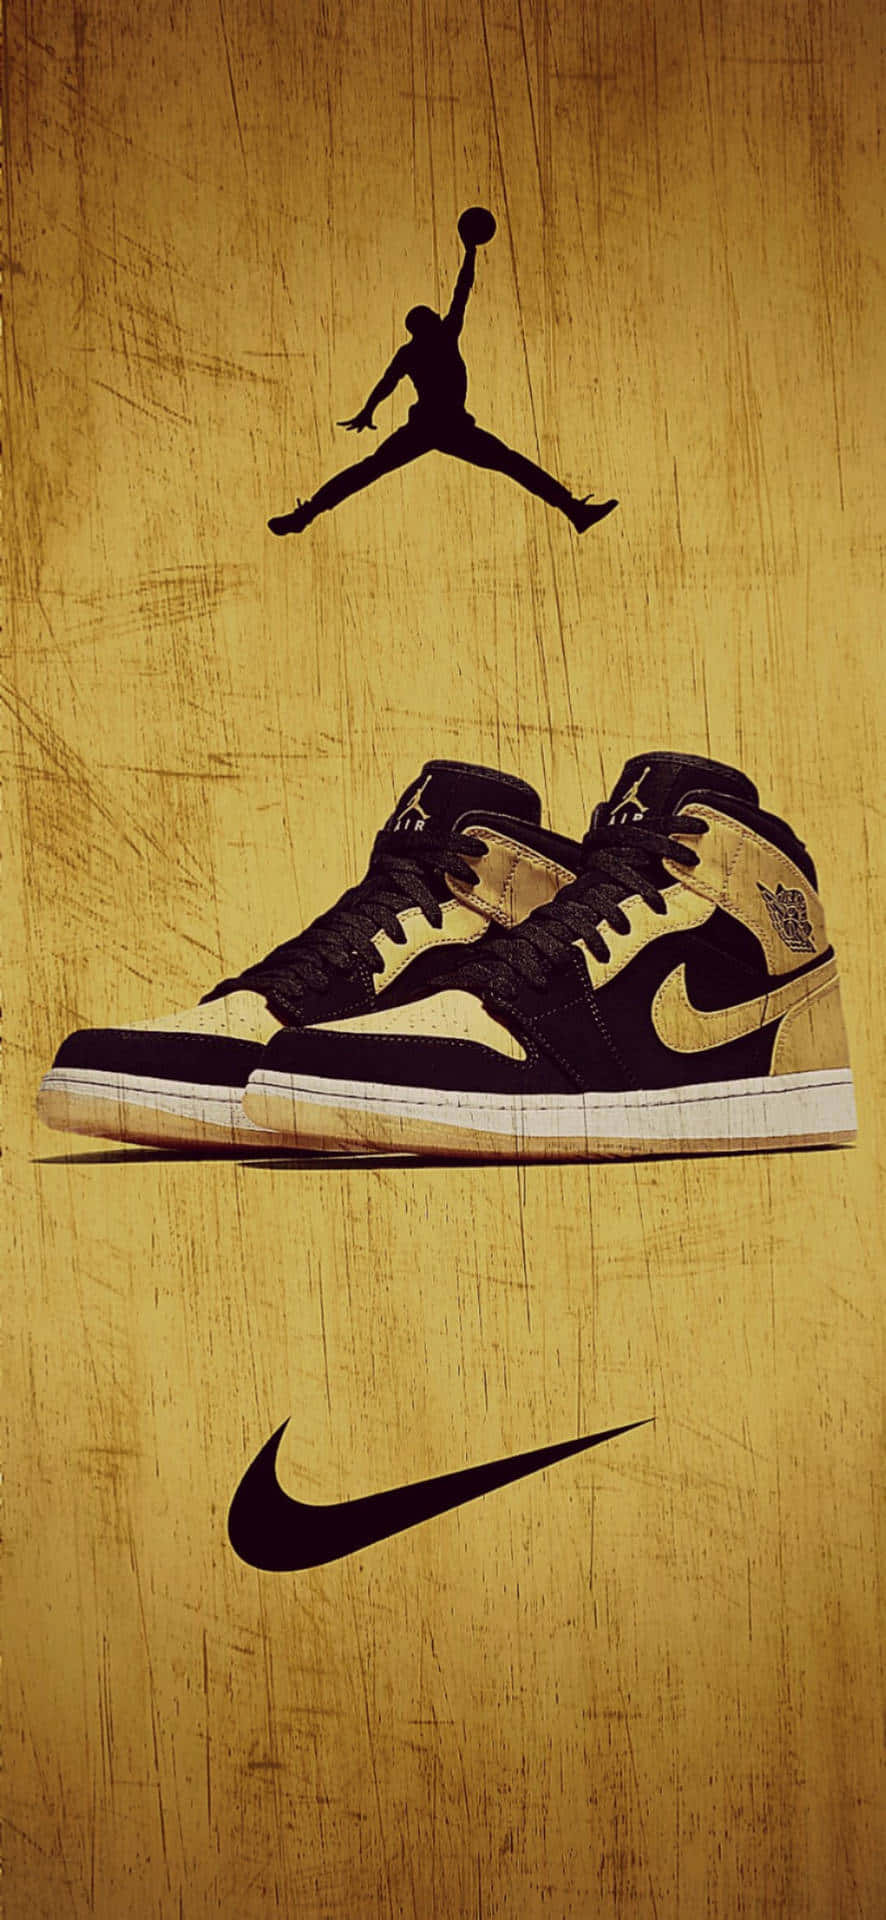 Einpaar Goldene Und Schwarze Jordan Schuhe Auf Einem Braunen Hintergrund. Wallpaper